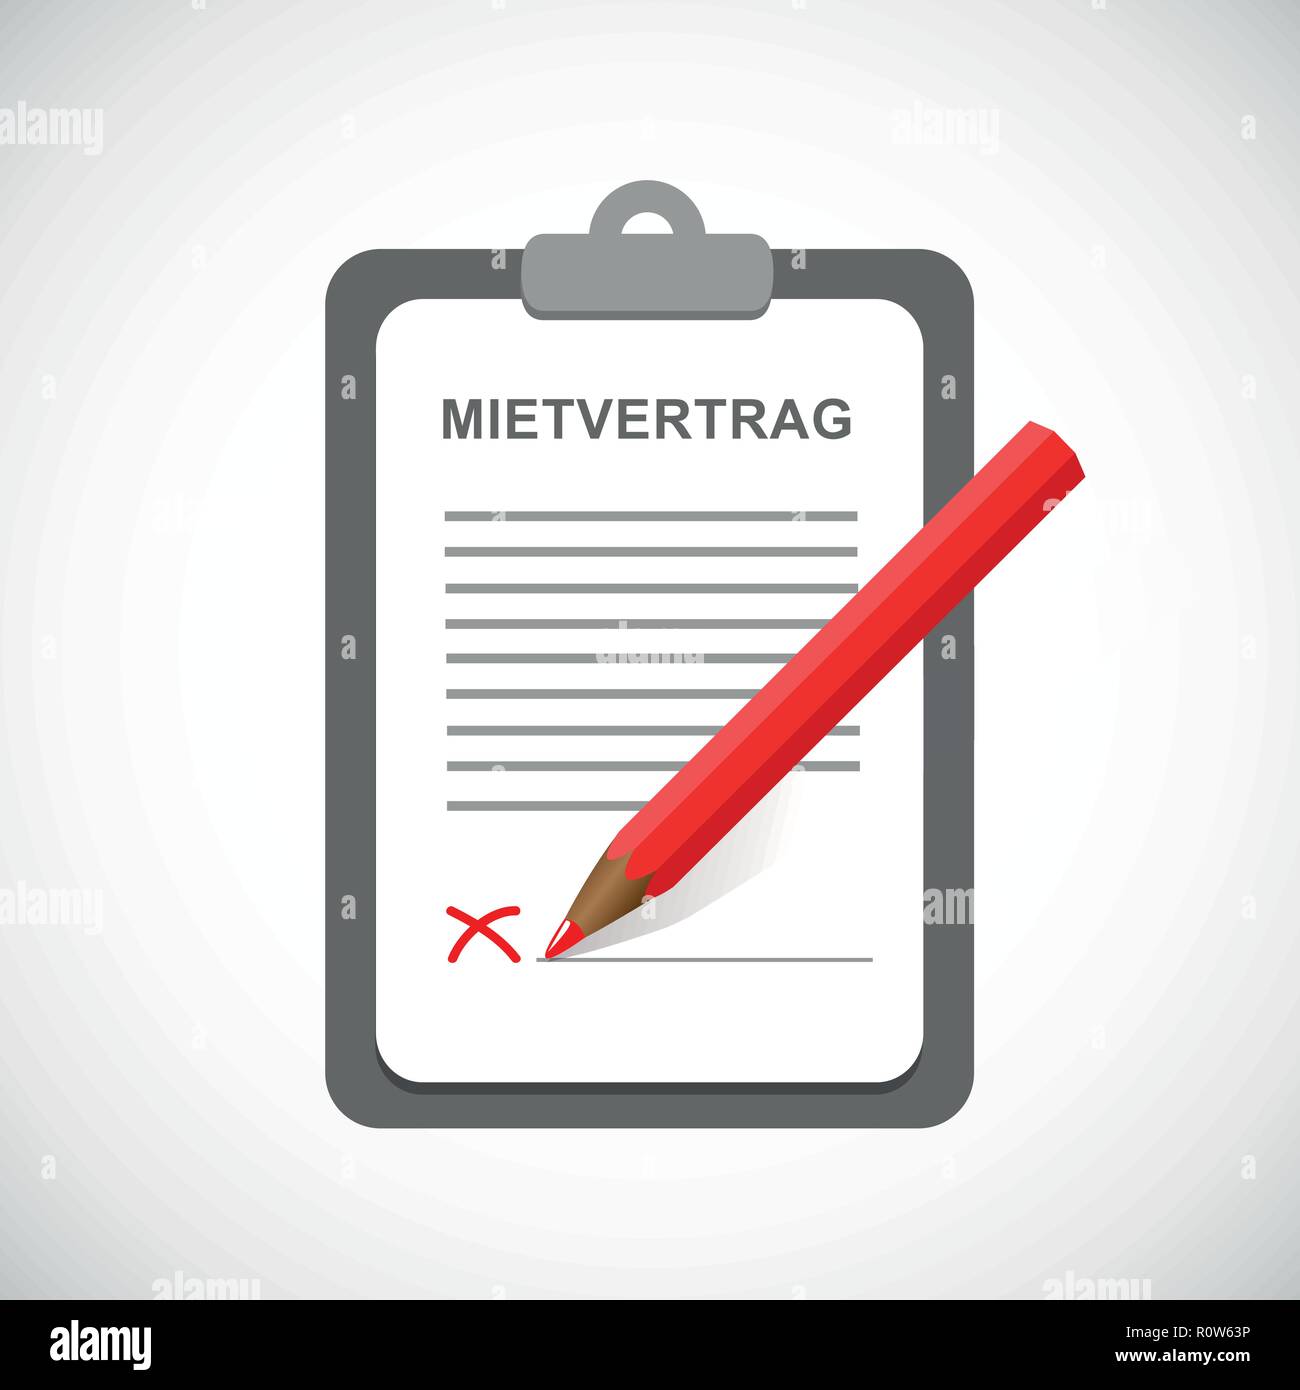 Mietvertrag Zwischenablage und roten Bleistift Vektor-illustration EPS 10. Stock Vektor